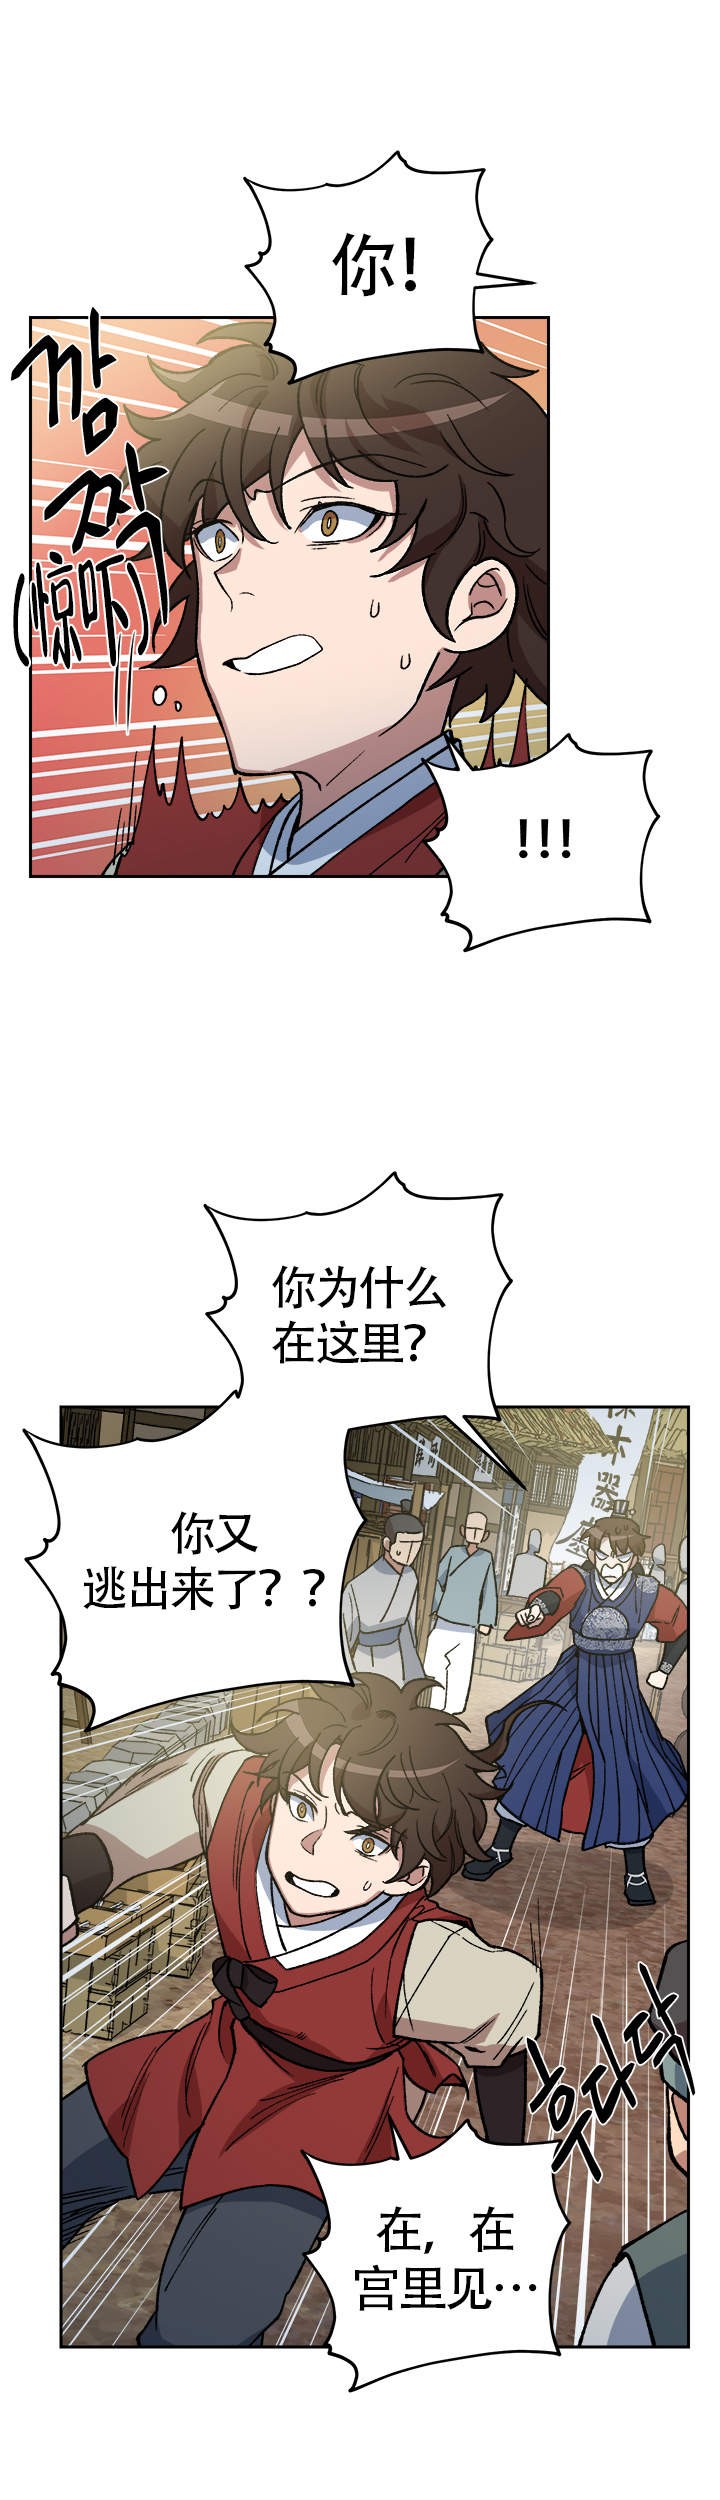 内侍失格/王储难保漫画,第131话4图